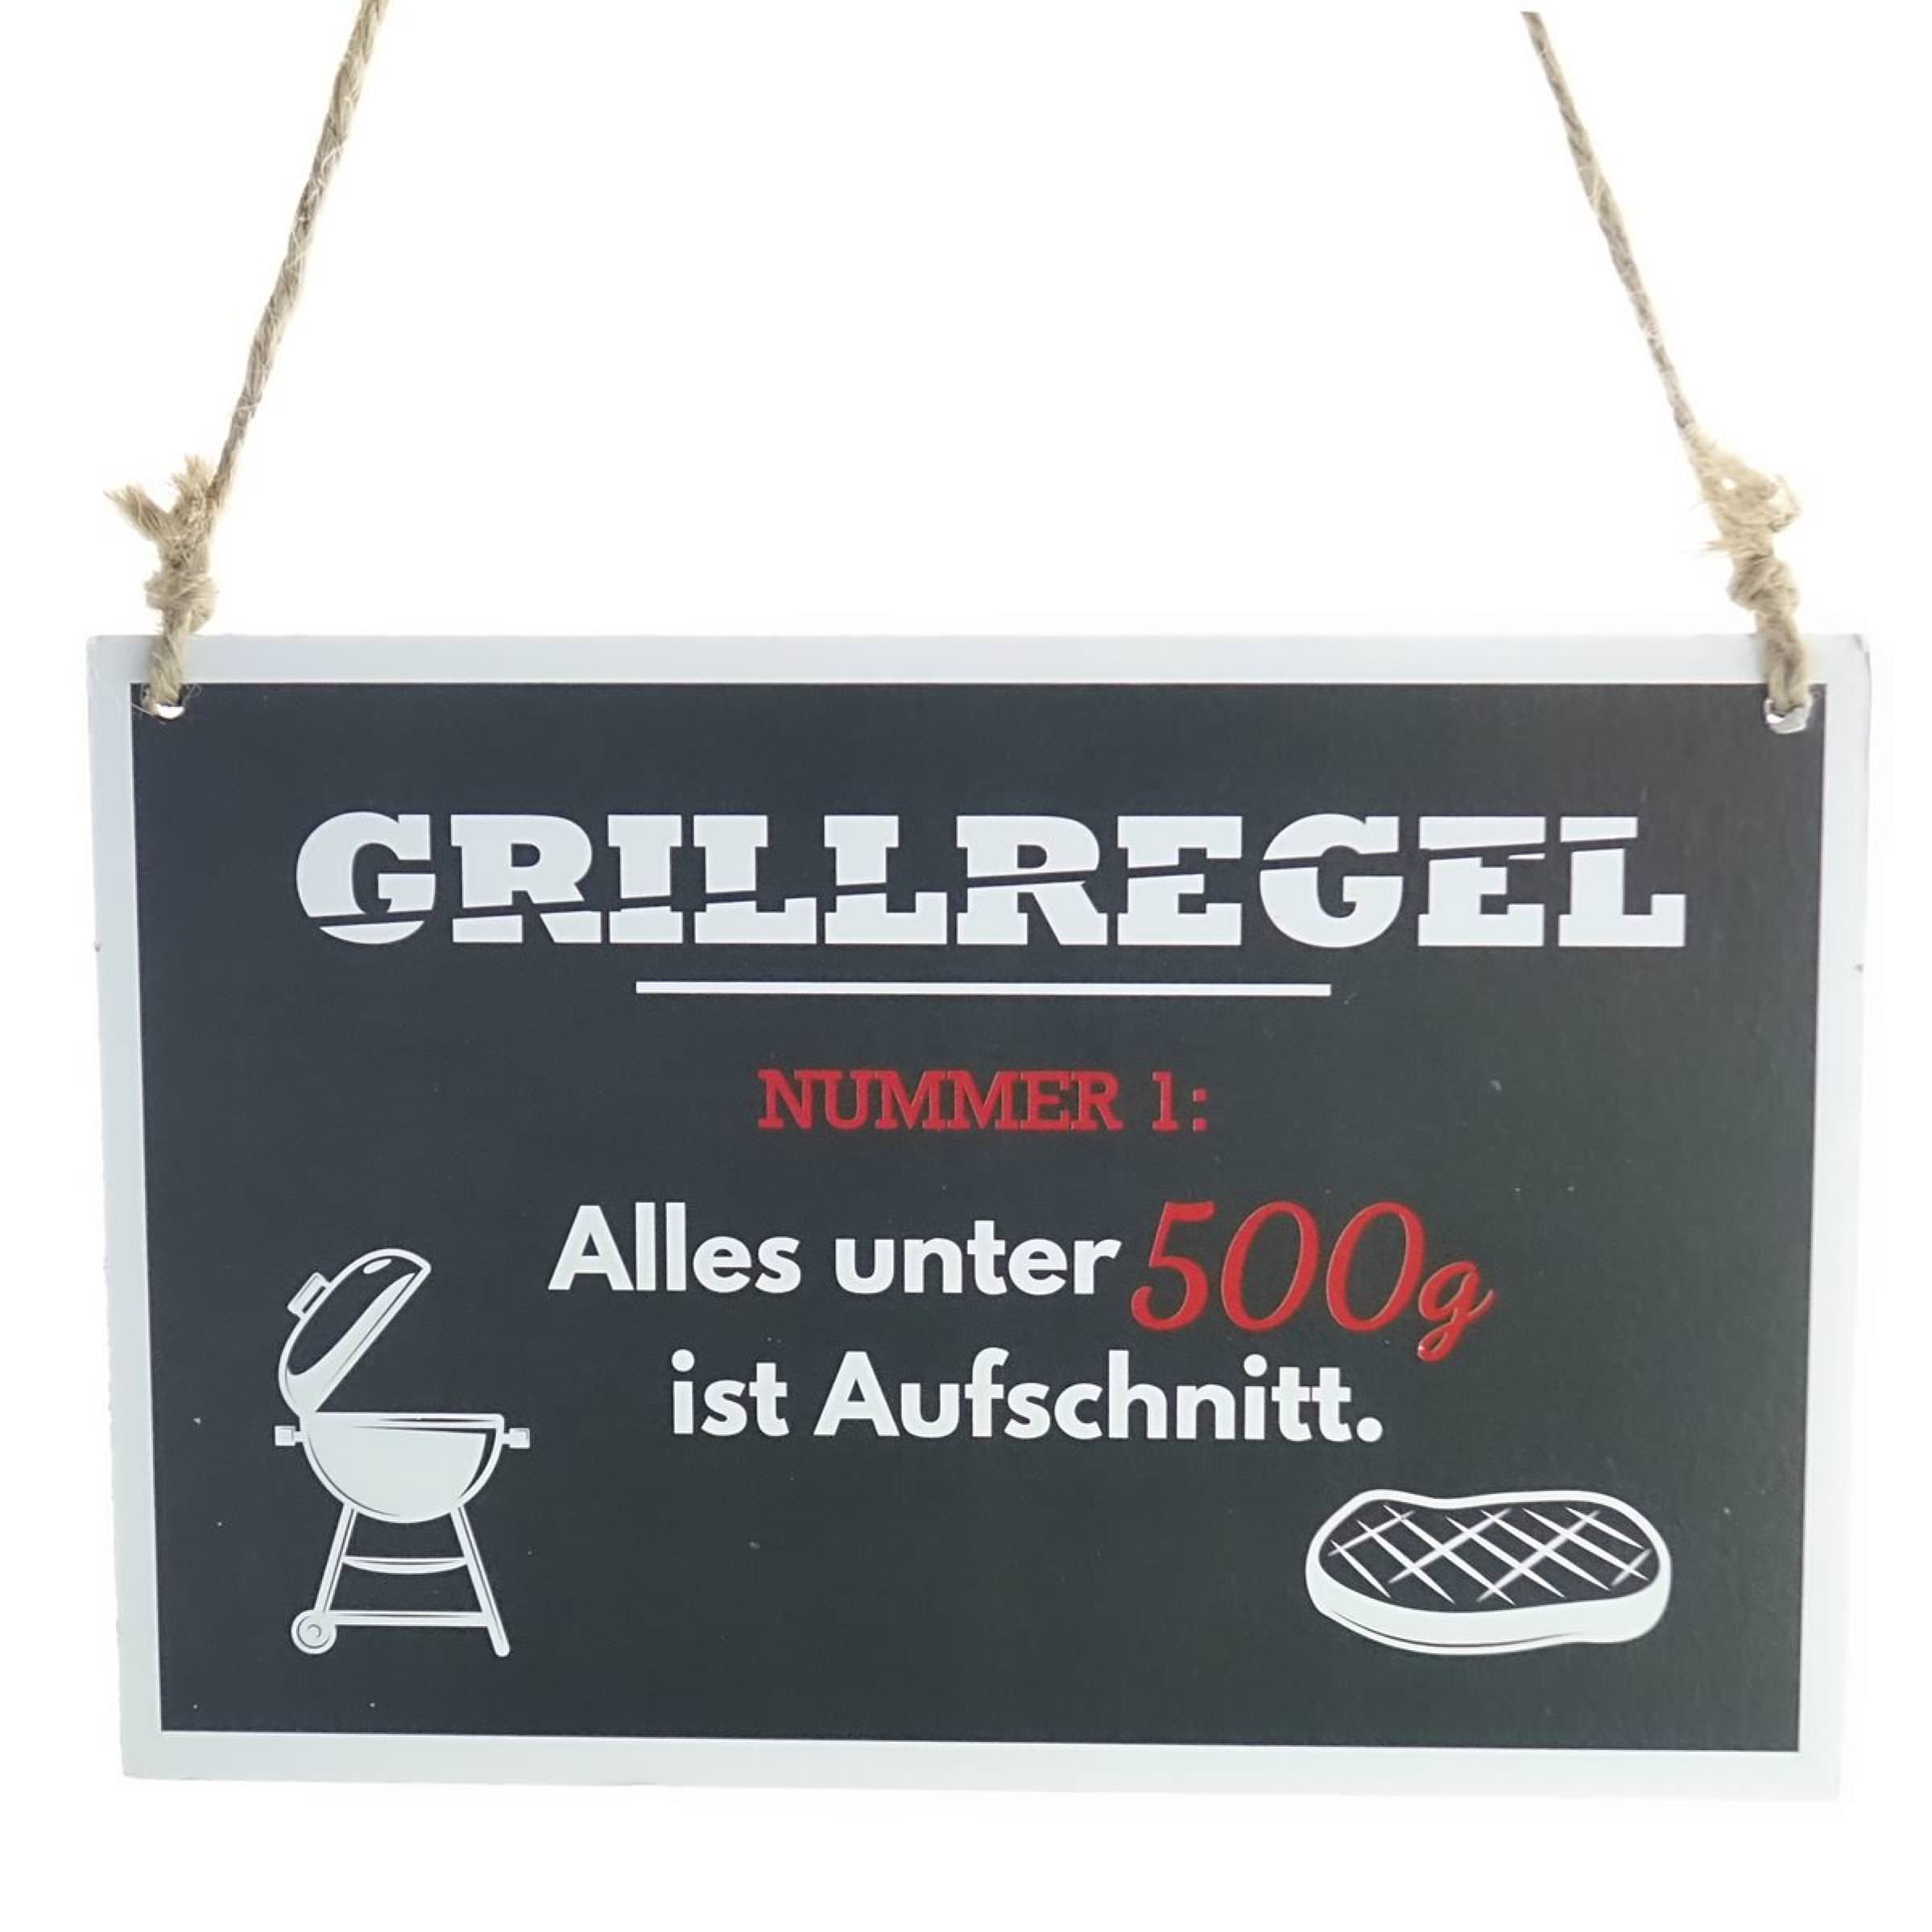 Riffelmacher BBQ-Schild Grillregel schwarz zum Hängen 18 x 12 cm - Holz |  die flora